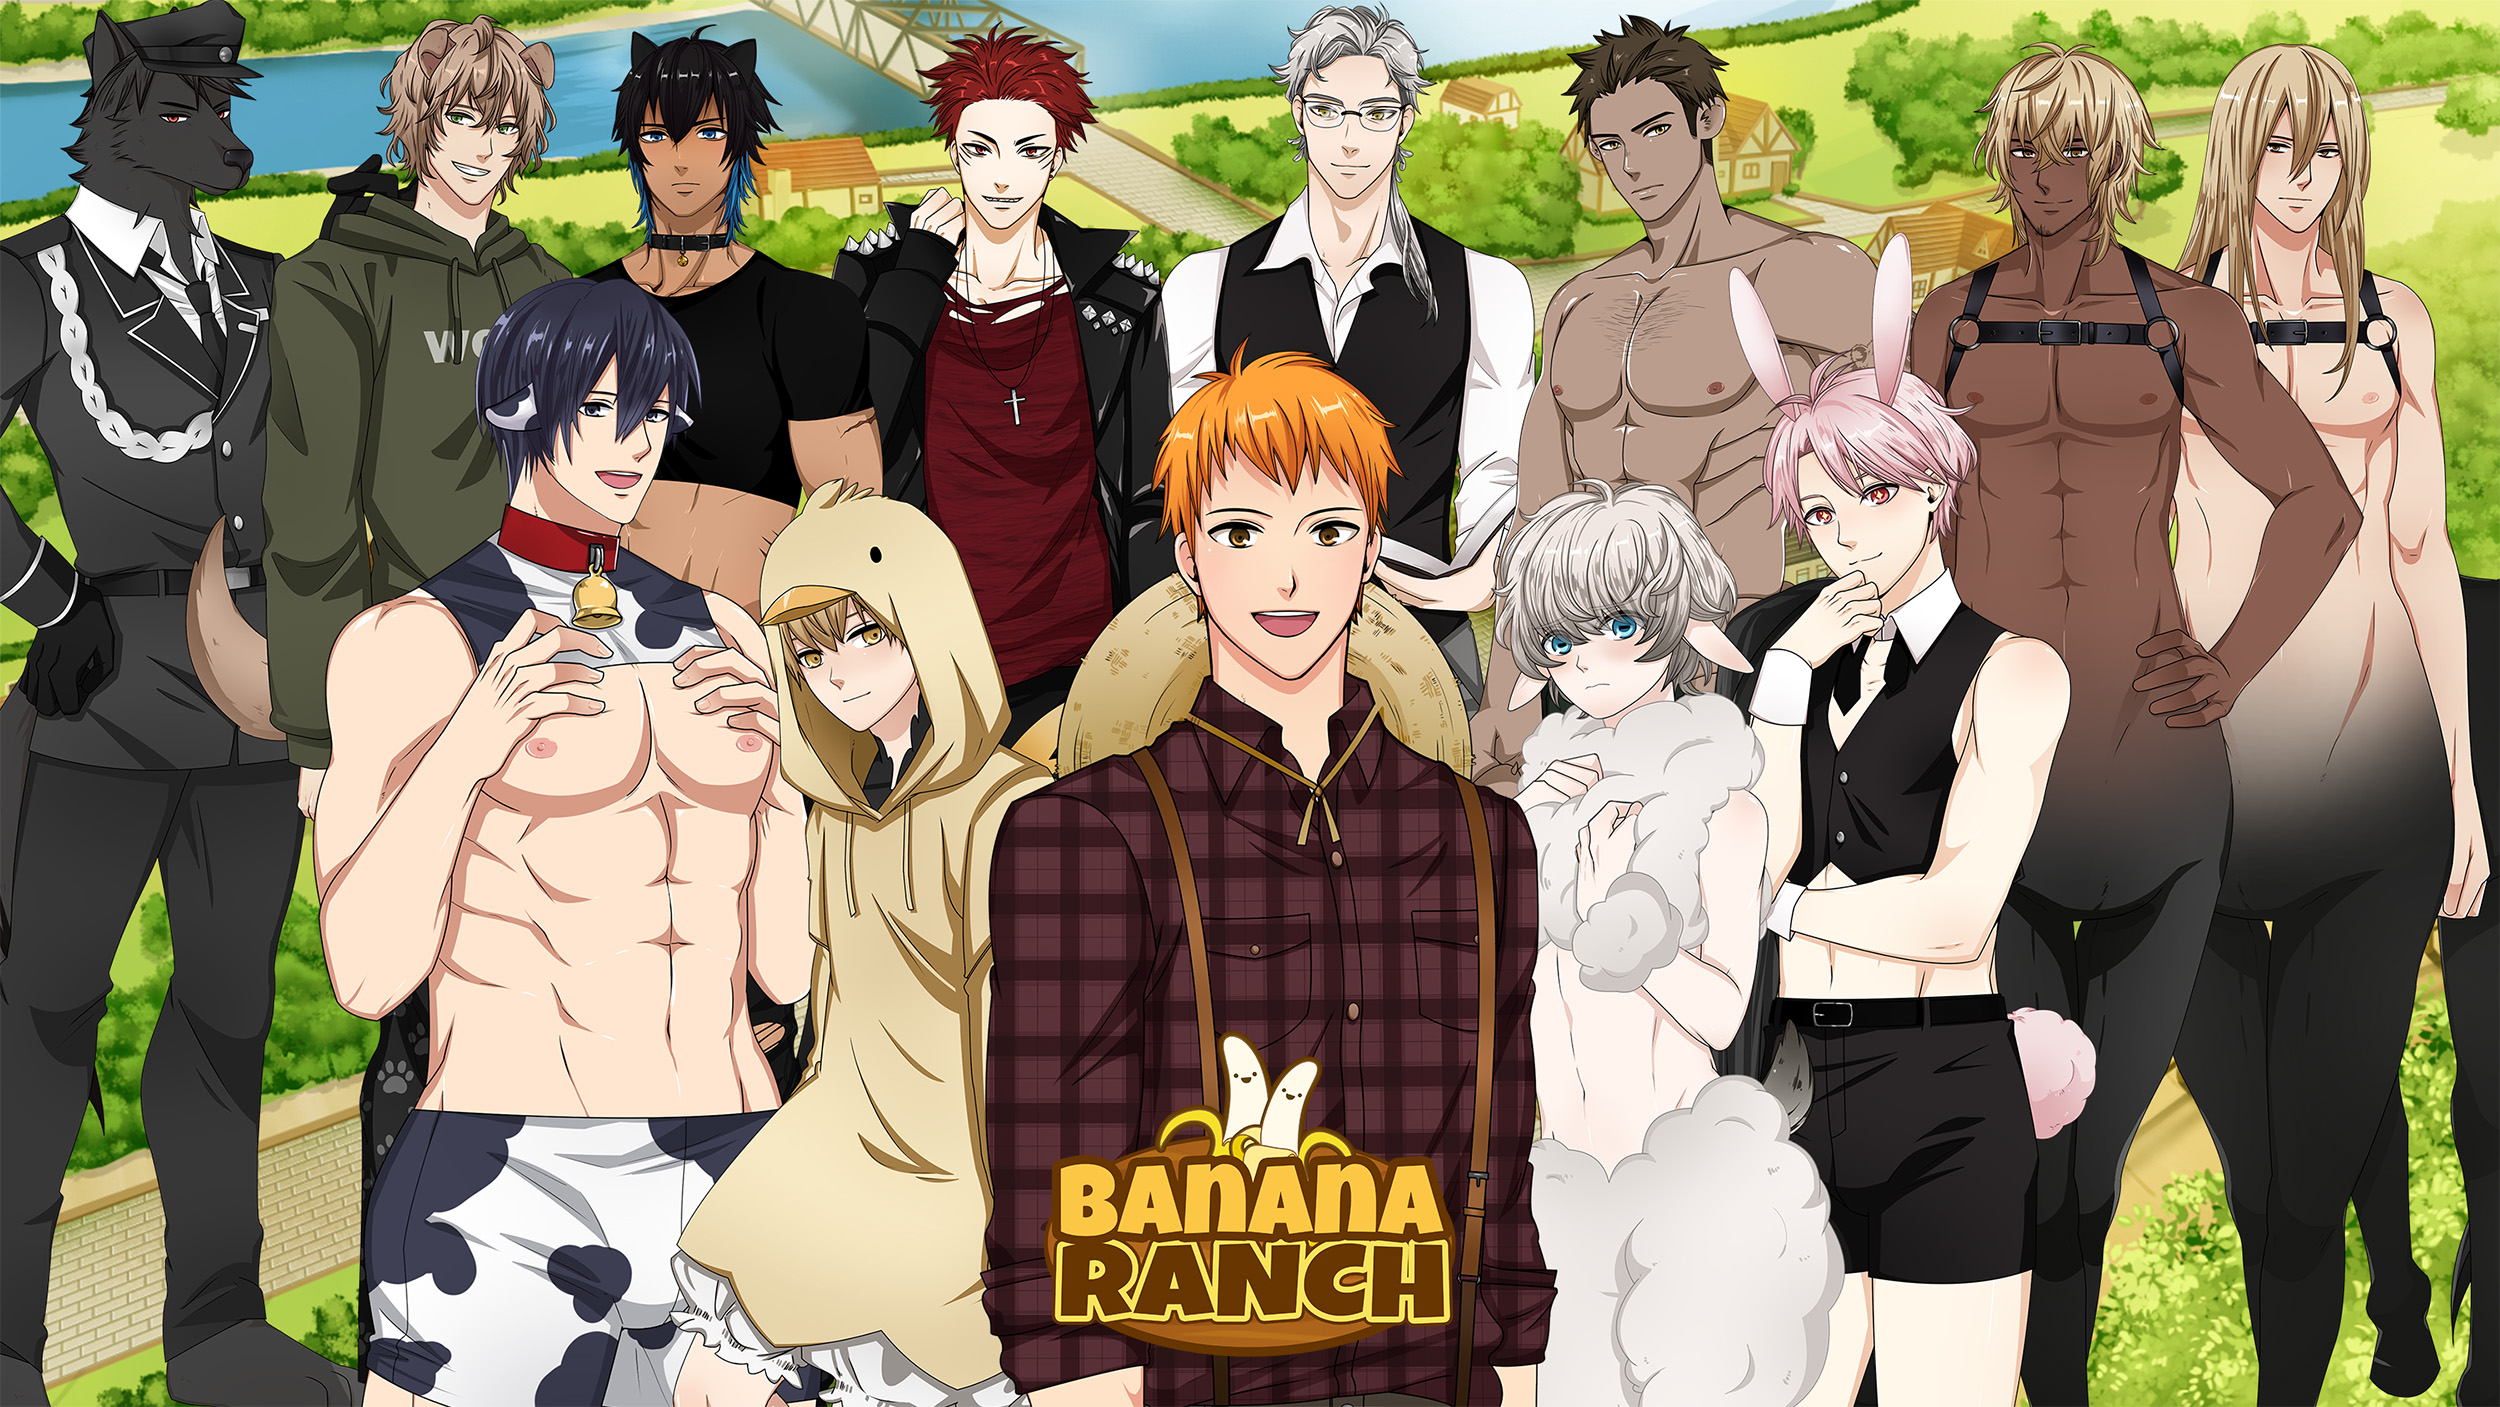 Banana Ranch: 18+ BL/Yaoi/Gay Visual Novel / Dating sim game